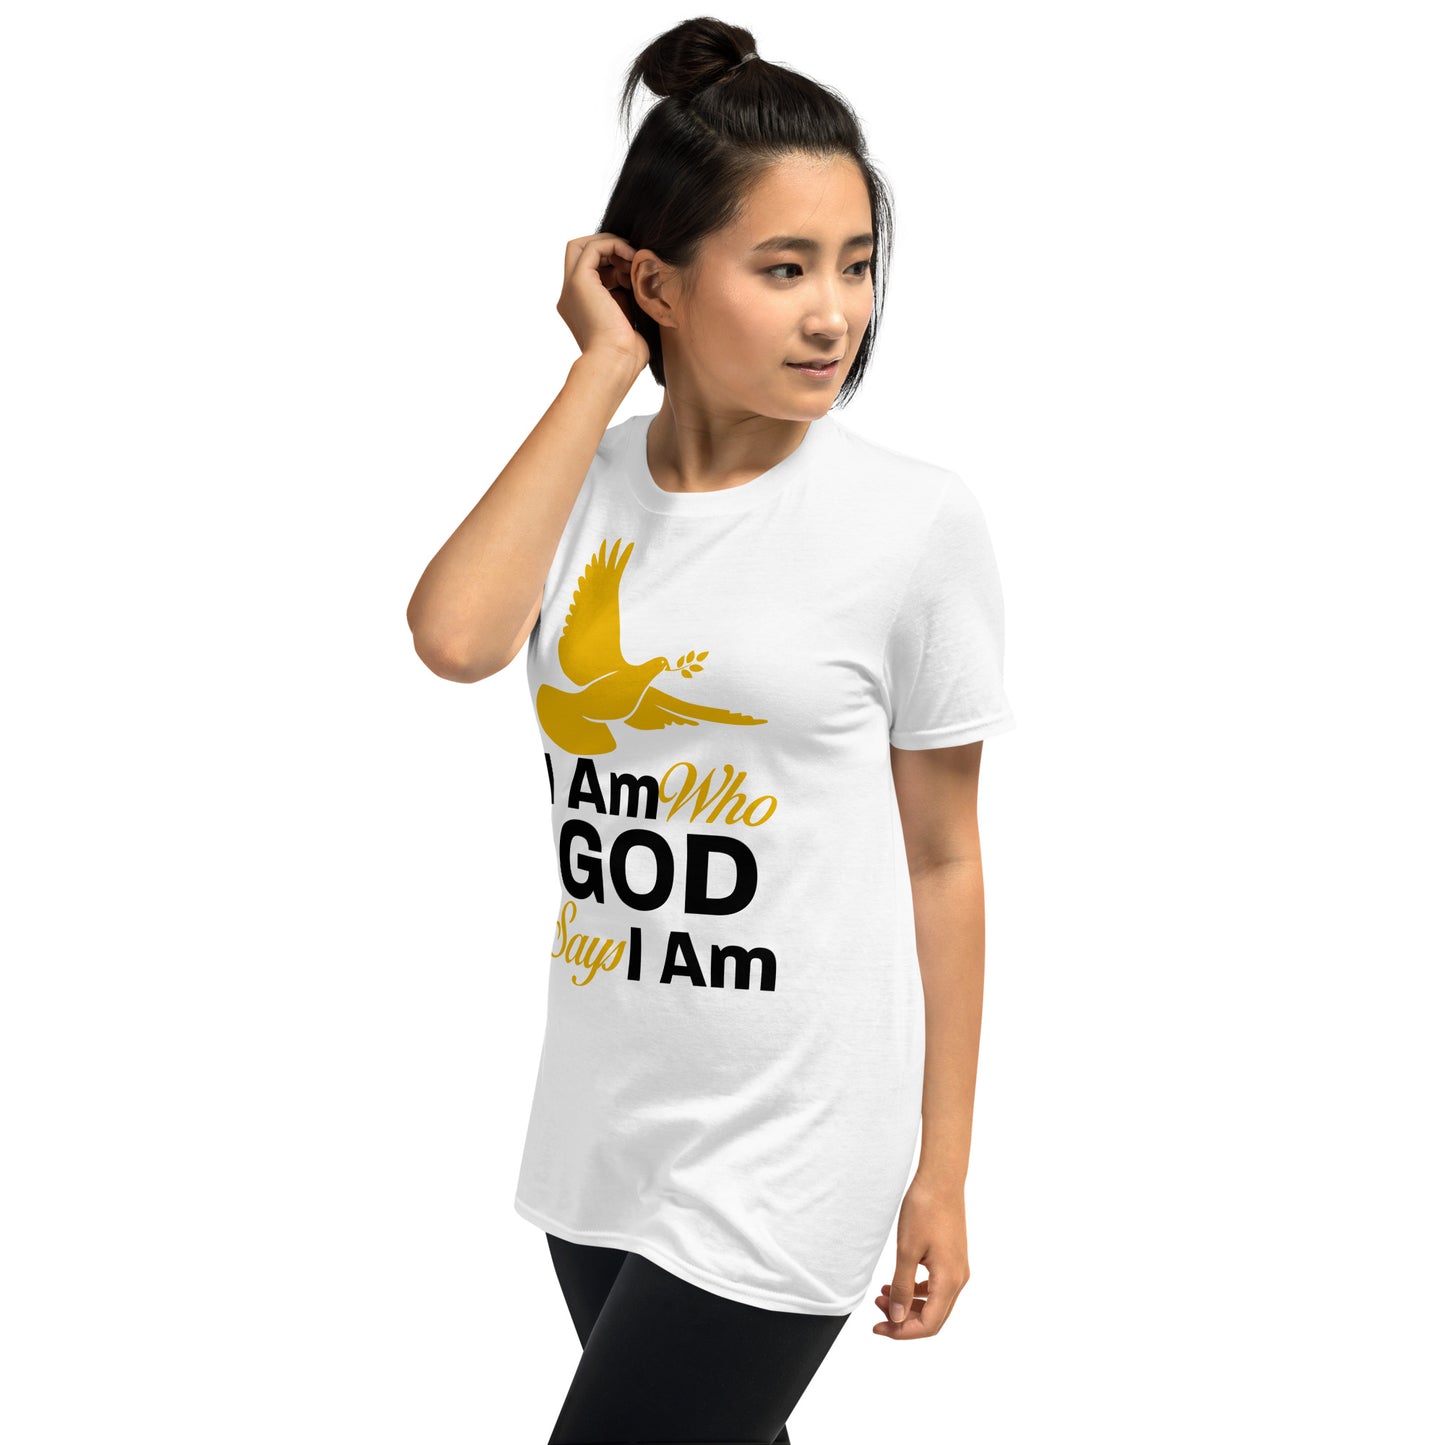 I Am Who God Says I Am - Inspirational Unisex T-Shirt with Durable Double Stitching